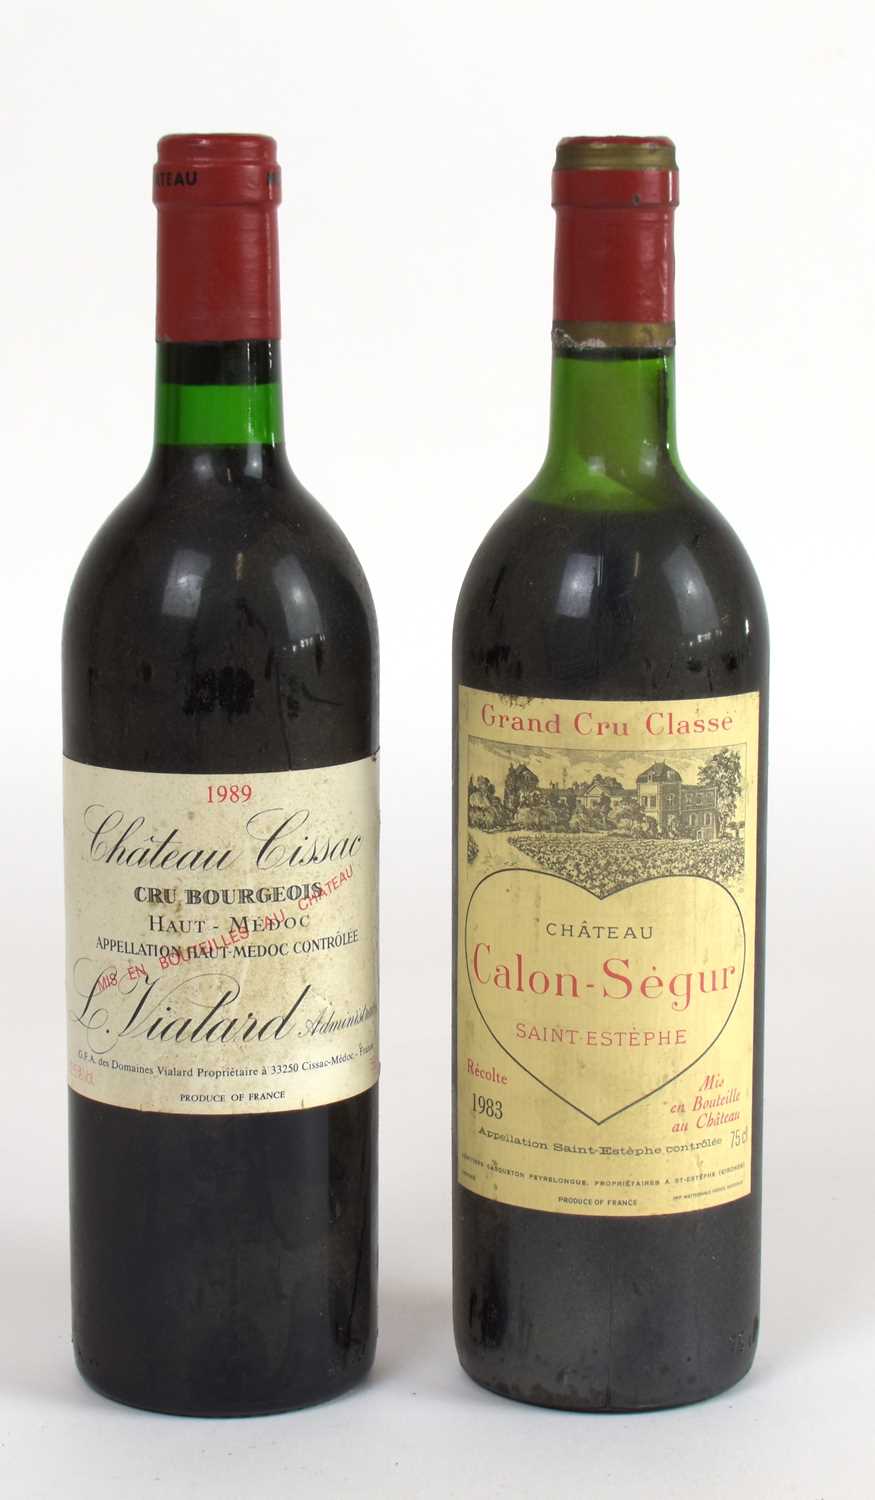 RED WINE; a bottle Château Calon-Segur Grand Cru Classe 1983 and a bottle Château Cissac 1989, 12.